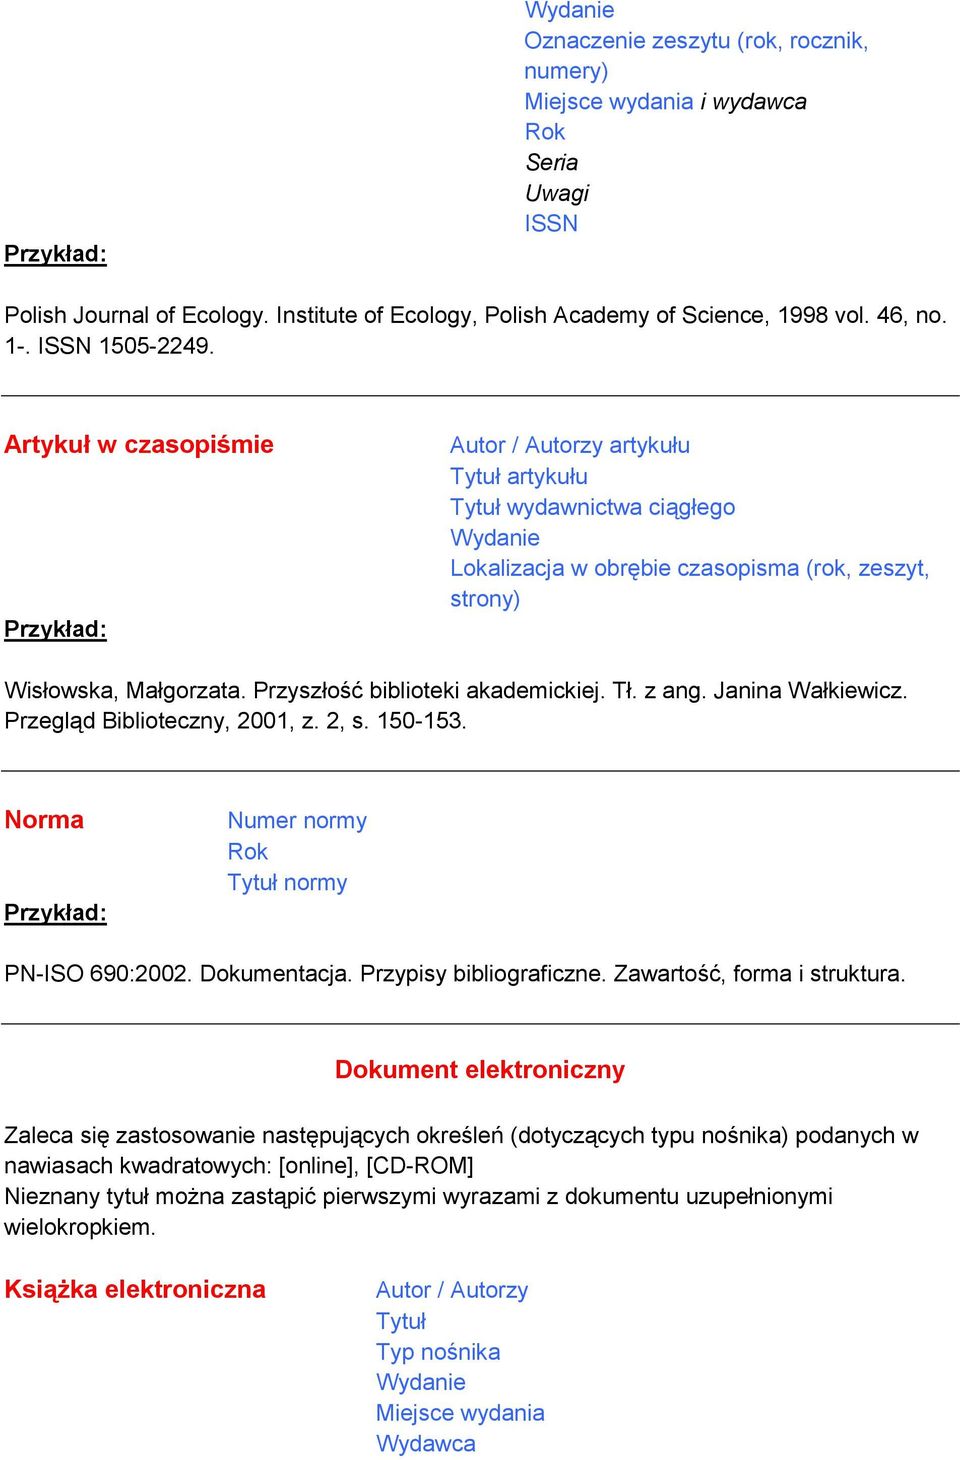 Janina Wałkiewicz. Przegląd Biblioteczny, 2001, z. 2, s. 150-153. Norma Numer normy Rok normy PN-ISO 690:2002. Dokumentacja. Przypisy bibliograficzne. Zawartość, forma i struktura.